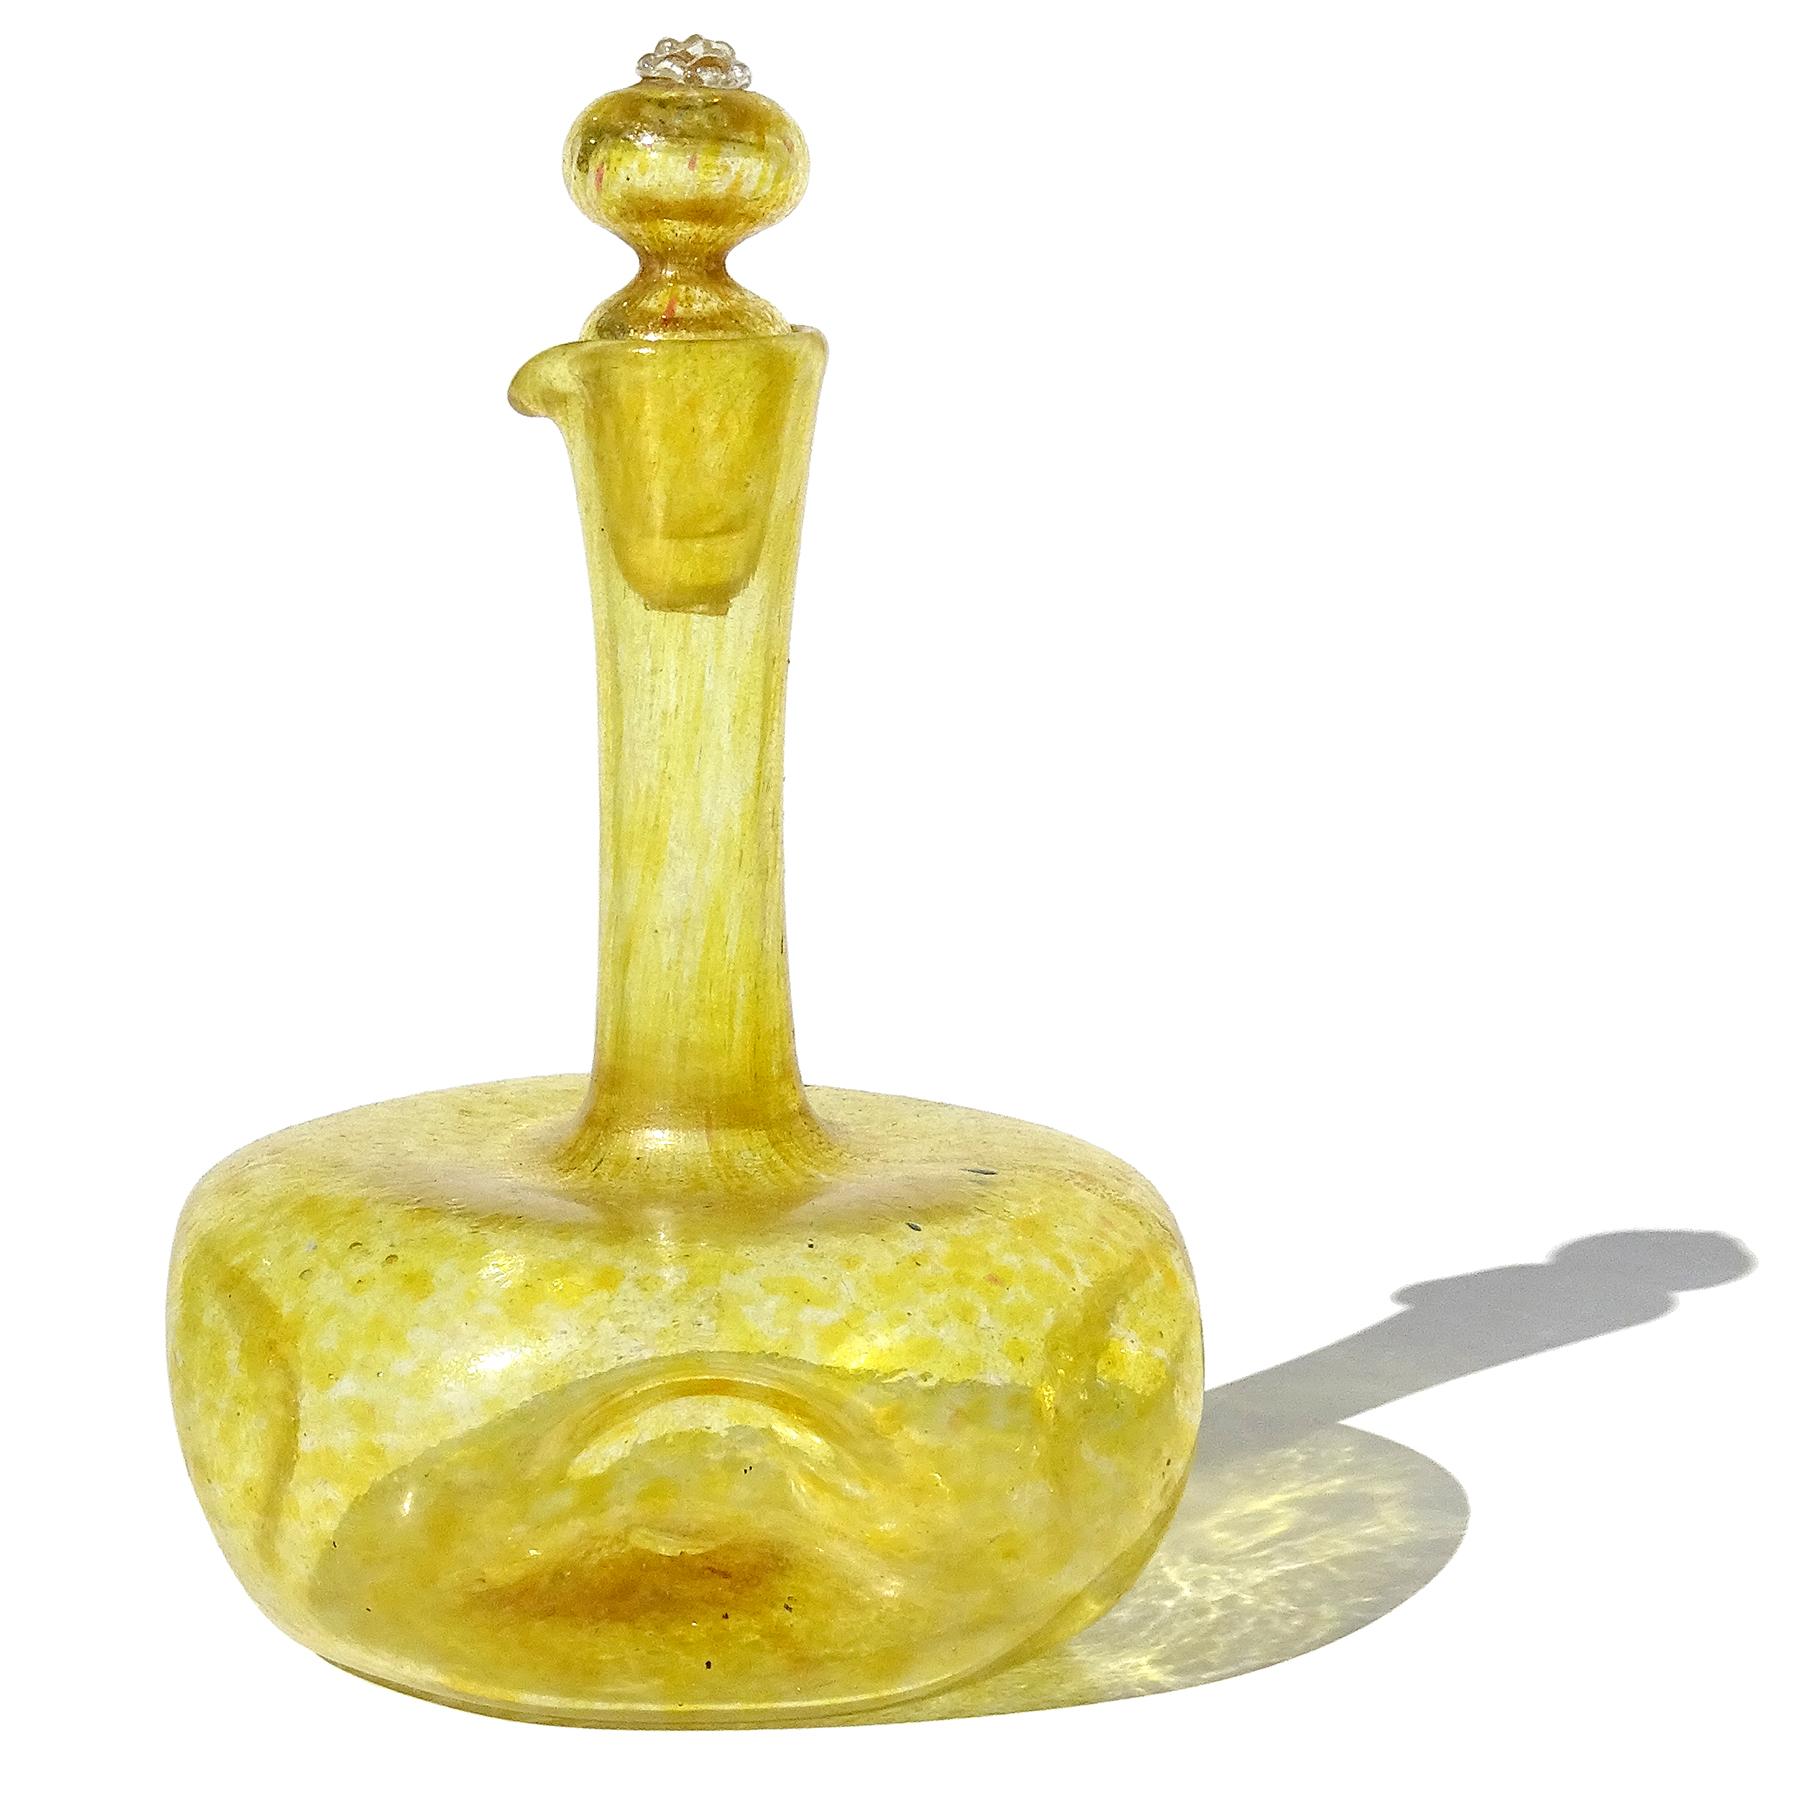 Schöne antike, frühe venezianische mundgeblasene gelbe und goldene Flecken italienische Kunst Glas Kreuzer mit originalen Stopfen. Wird dem Gewächshaus der Compagnia Di Venezia E Murano (C.V.M.) zugeschrieben. Die Flasche hat eine runde Form, ist